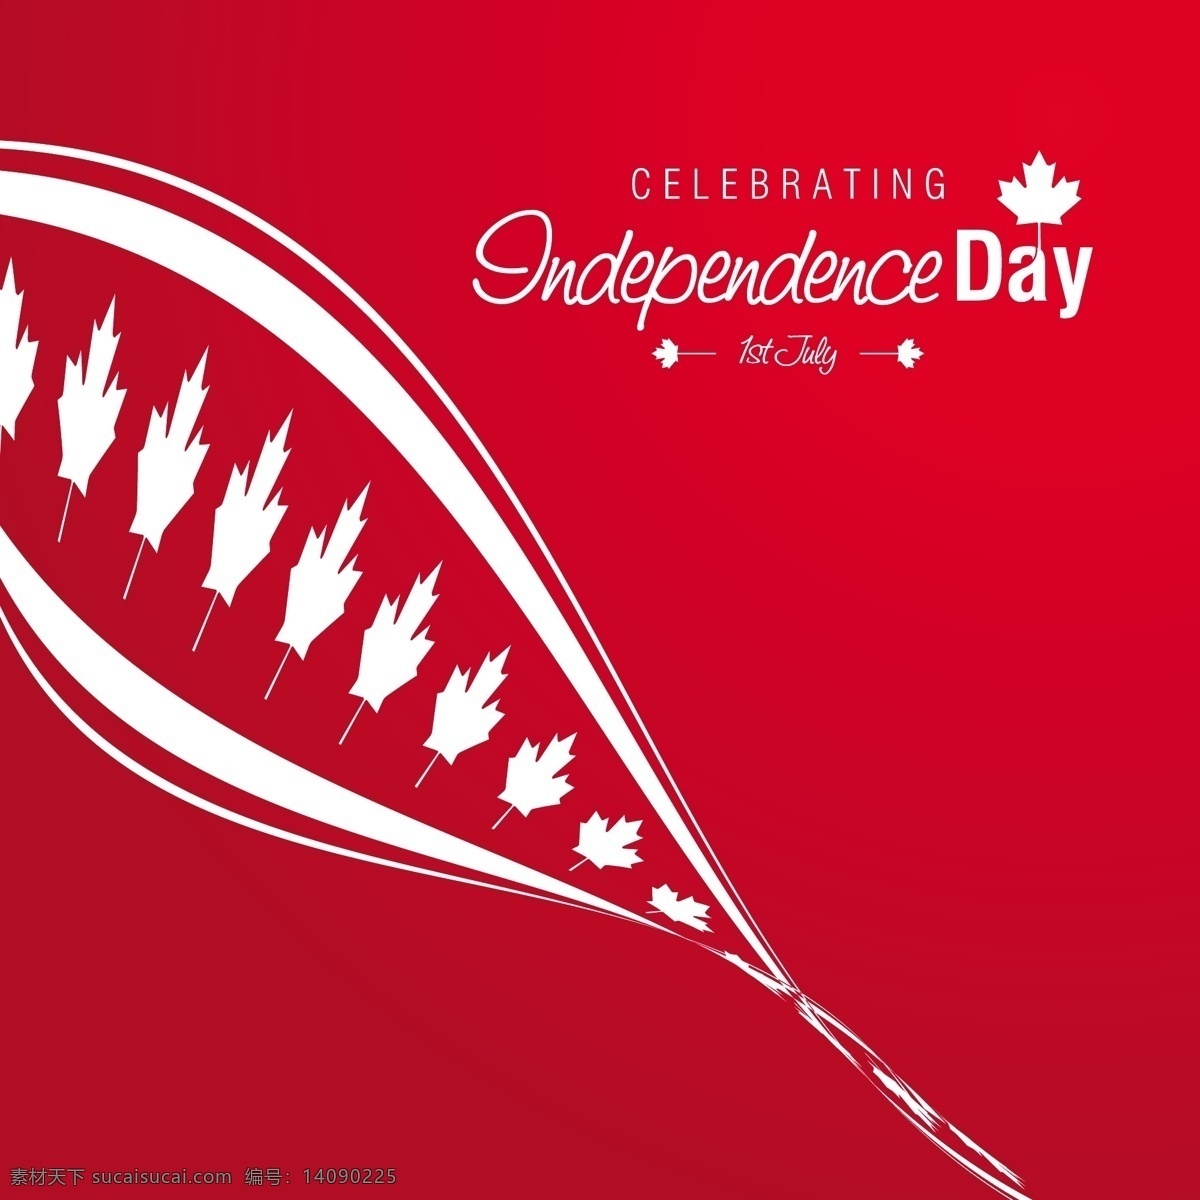 红色 加拿大 独立日 背景 波 的背景下 党的抽象 邀请卡 旗叶 快乐 庆祝 节日 假日 祝贺 象征 国家 下 自由投票